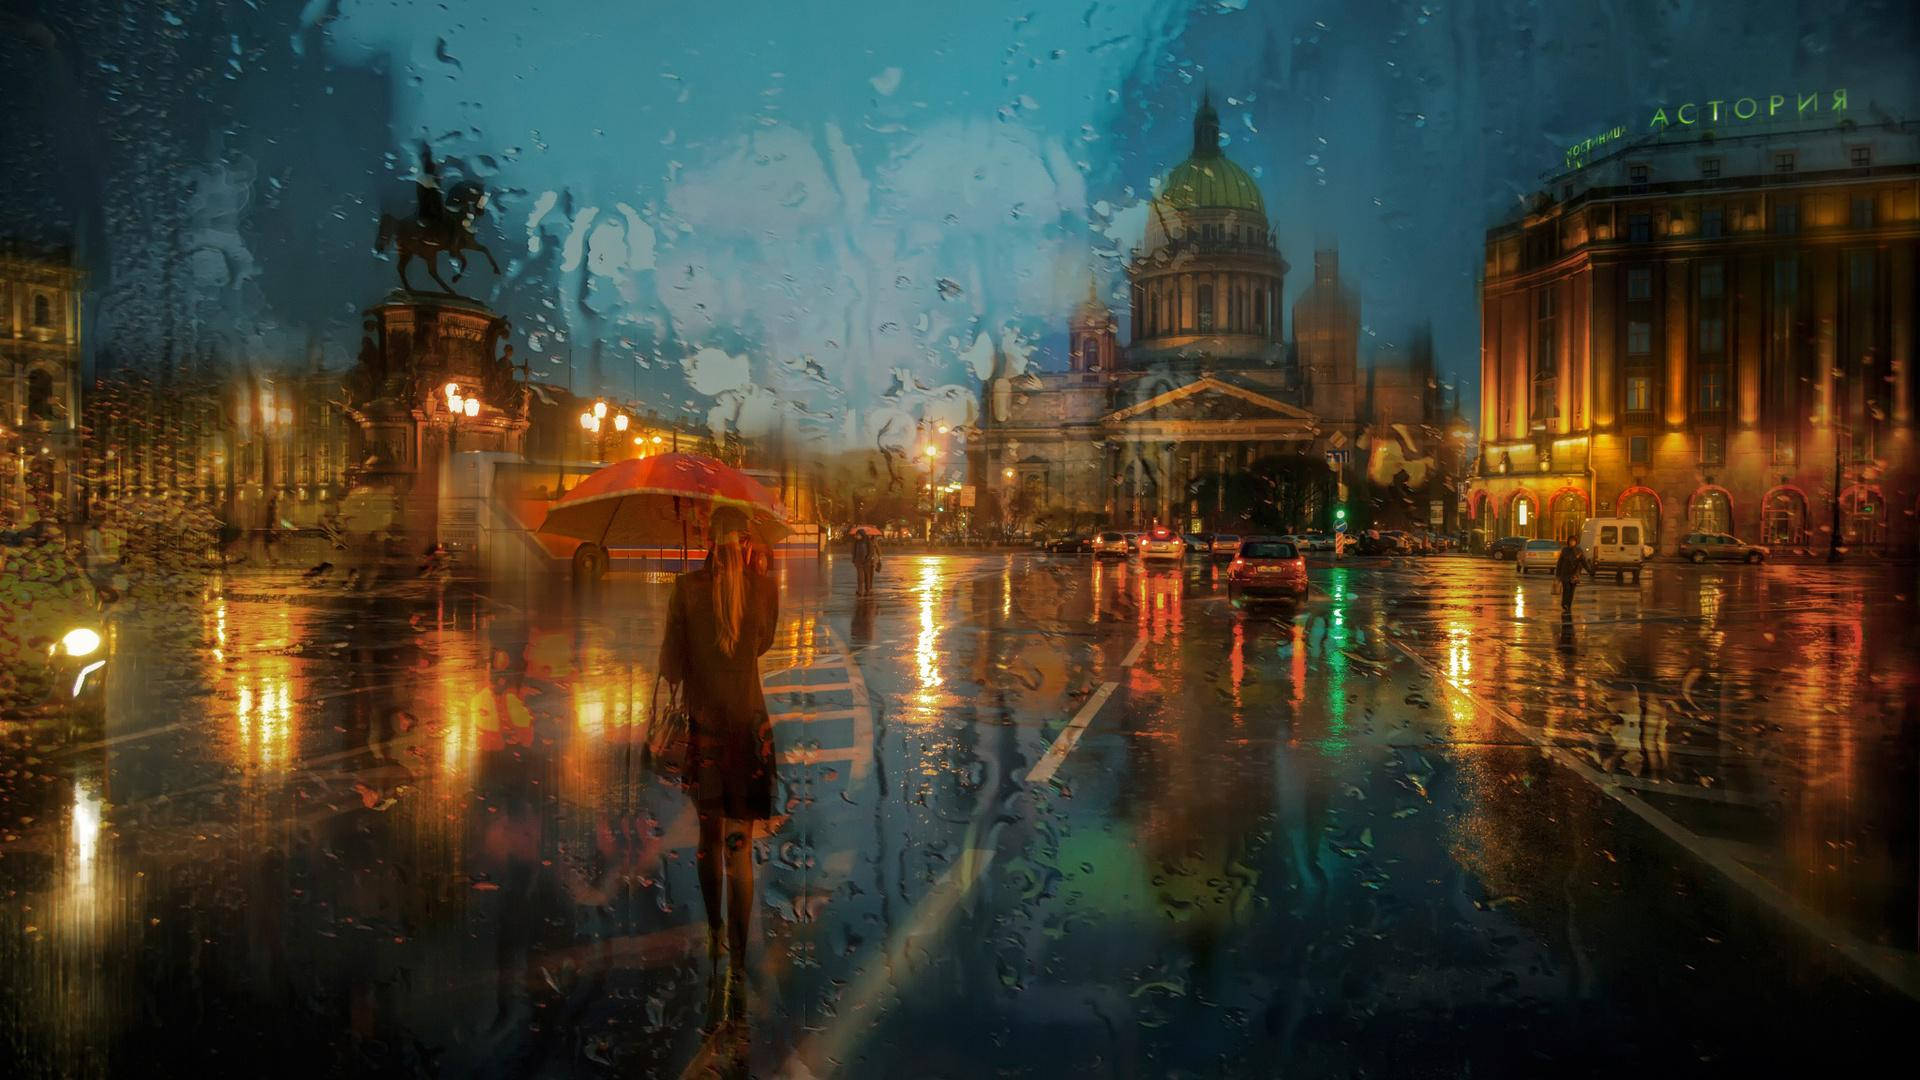 Rainy Weather Artwork Background